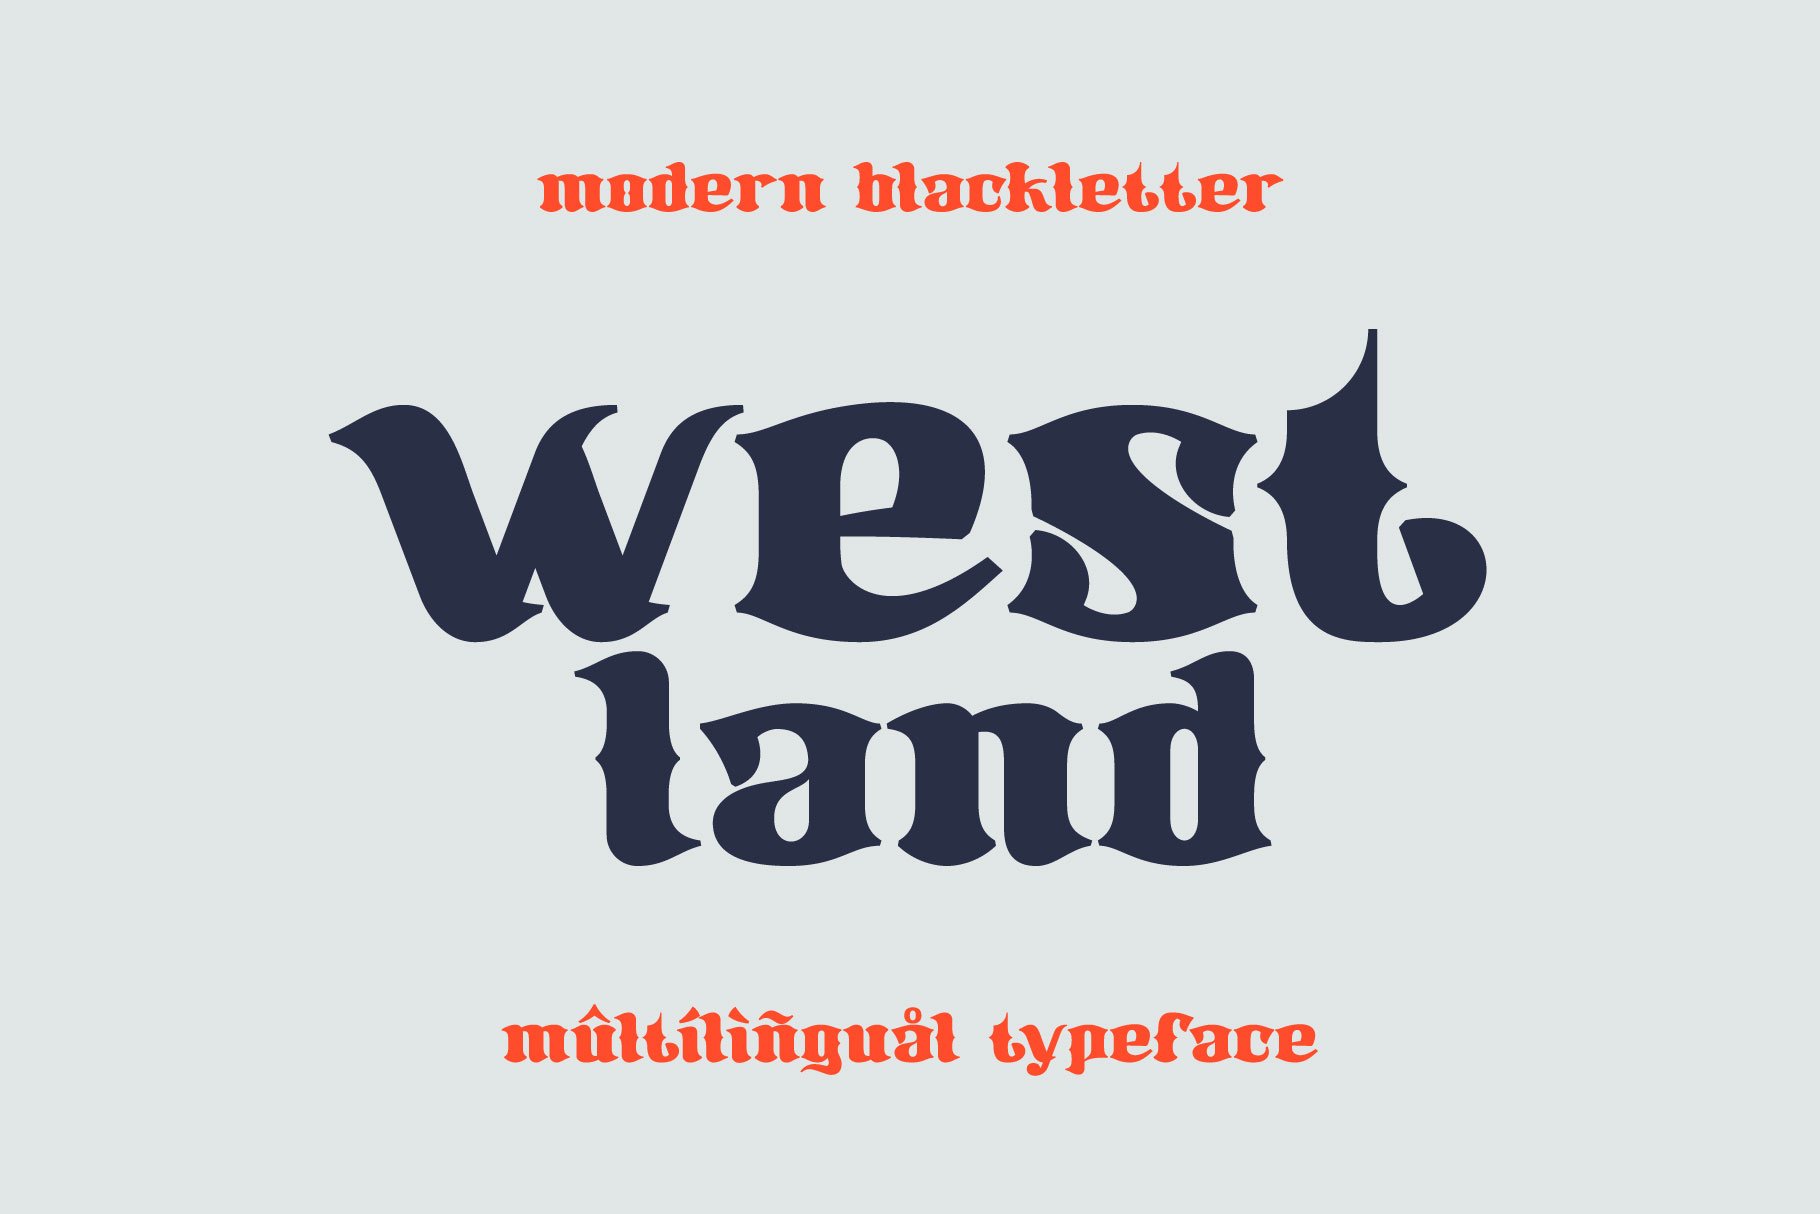 Westland blackletter font cover image.